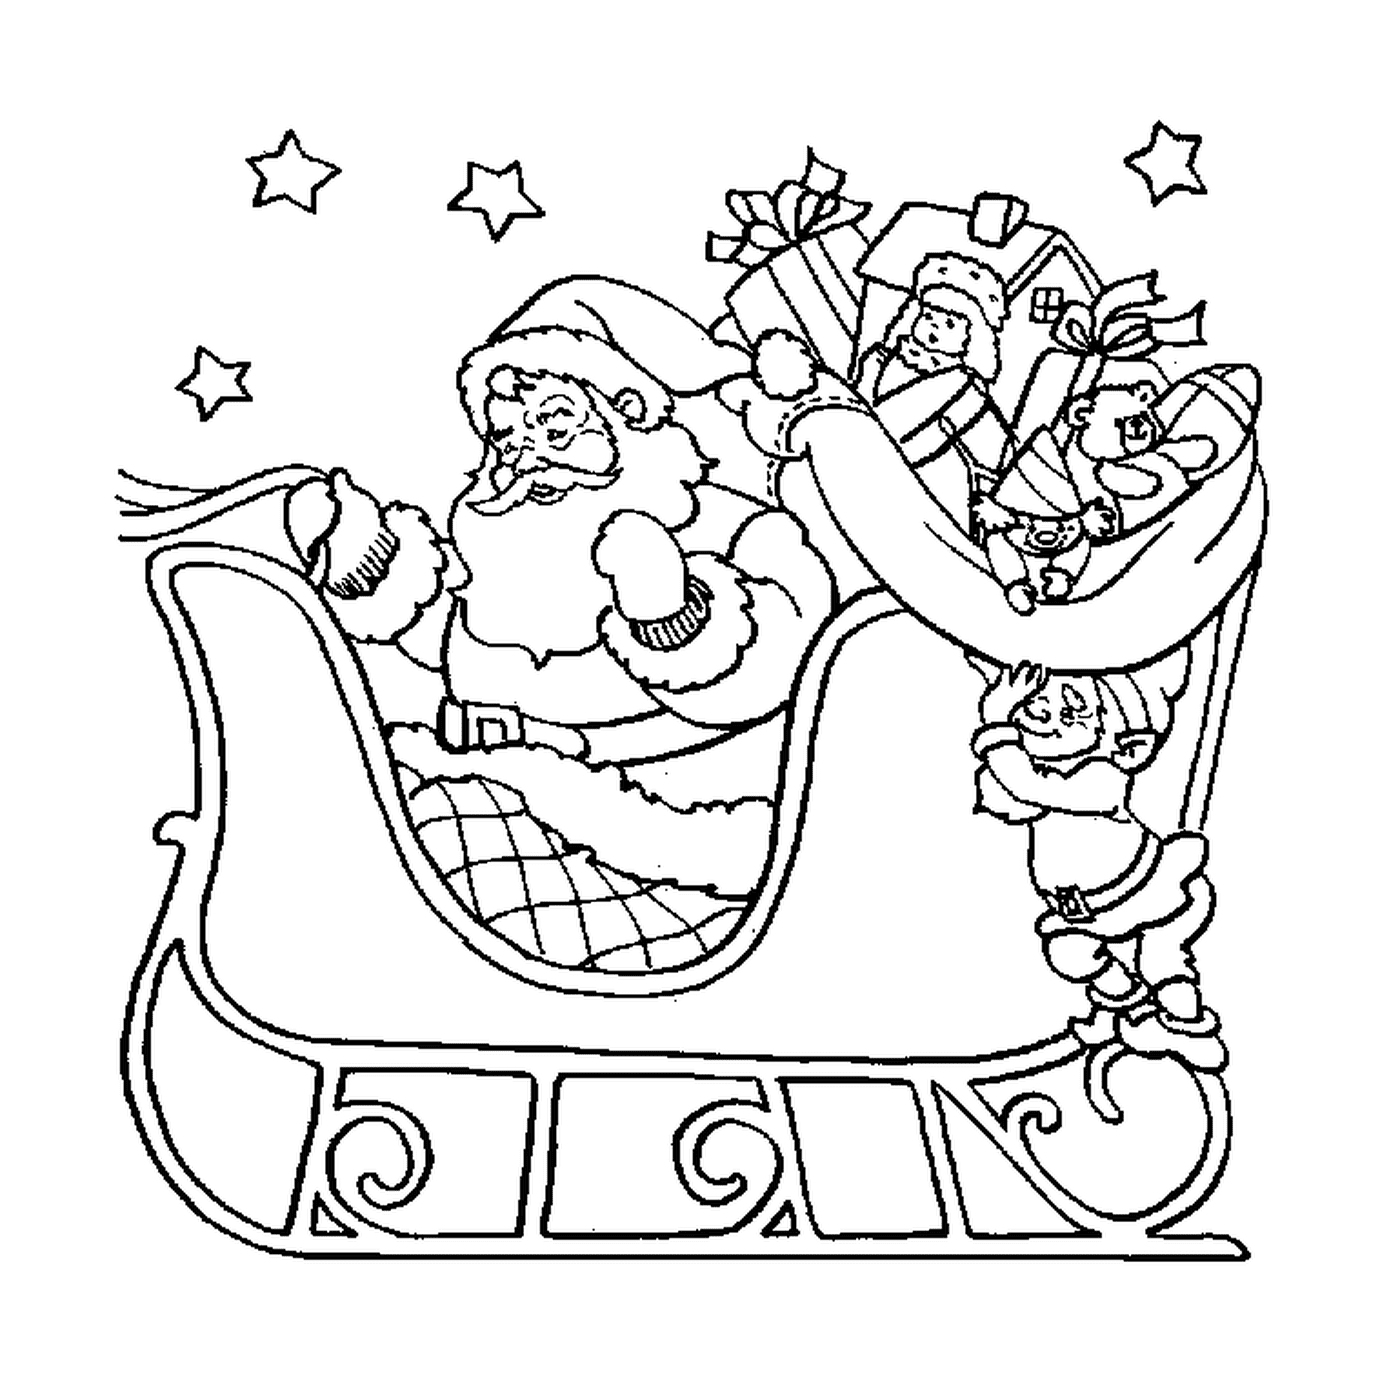  Santa in a sled 